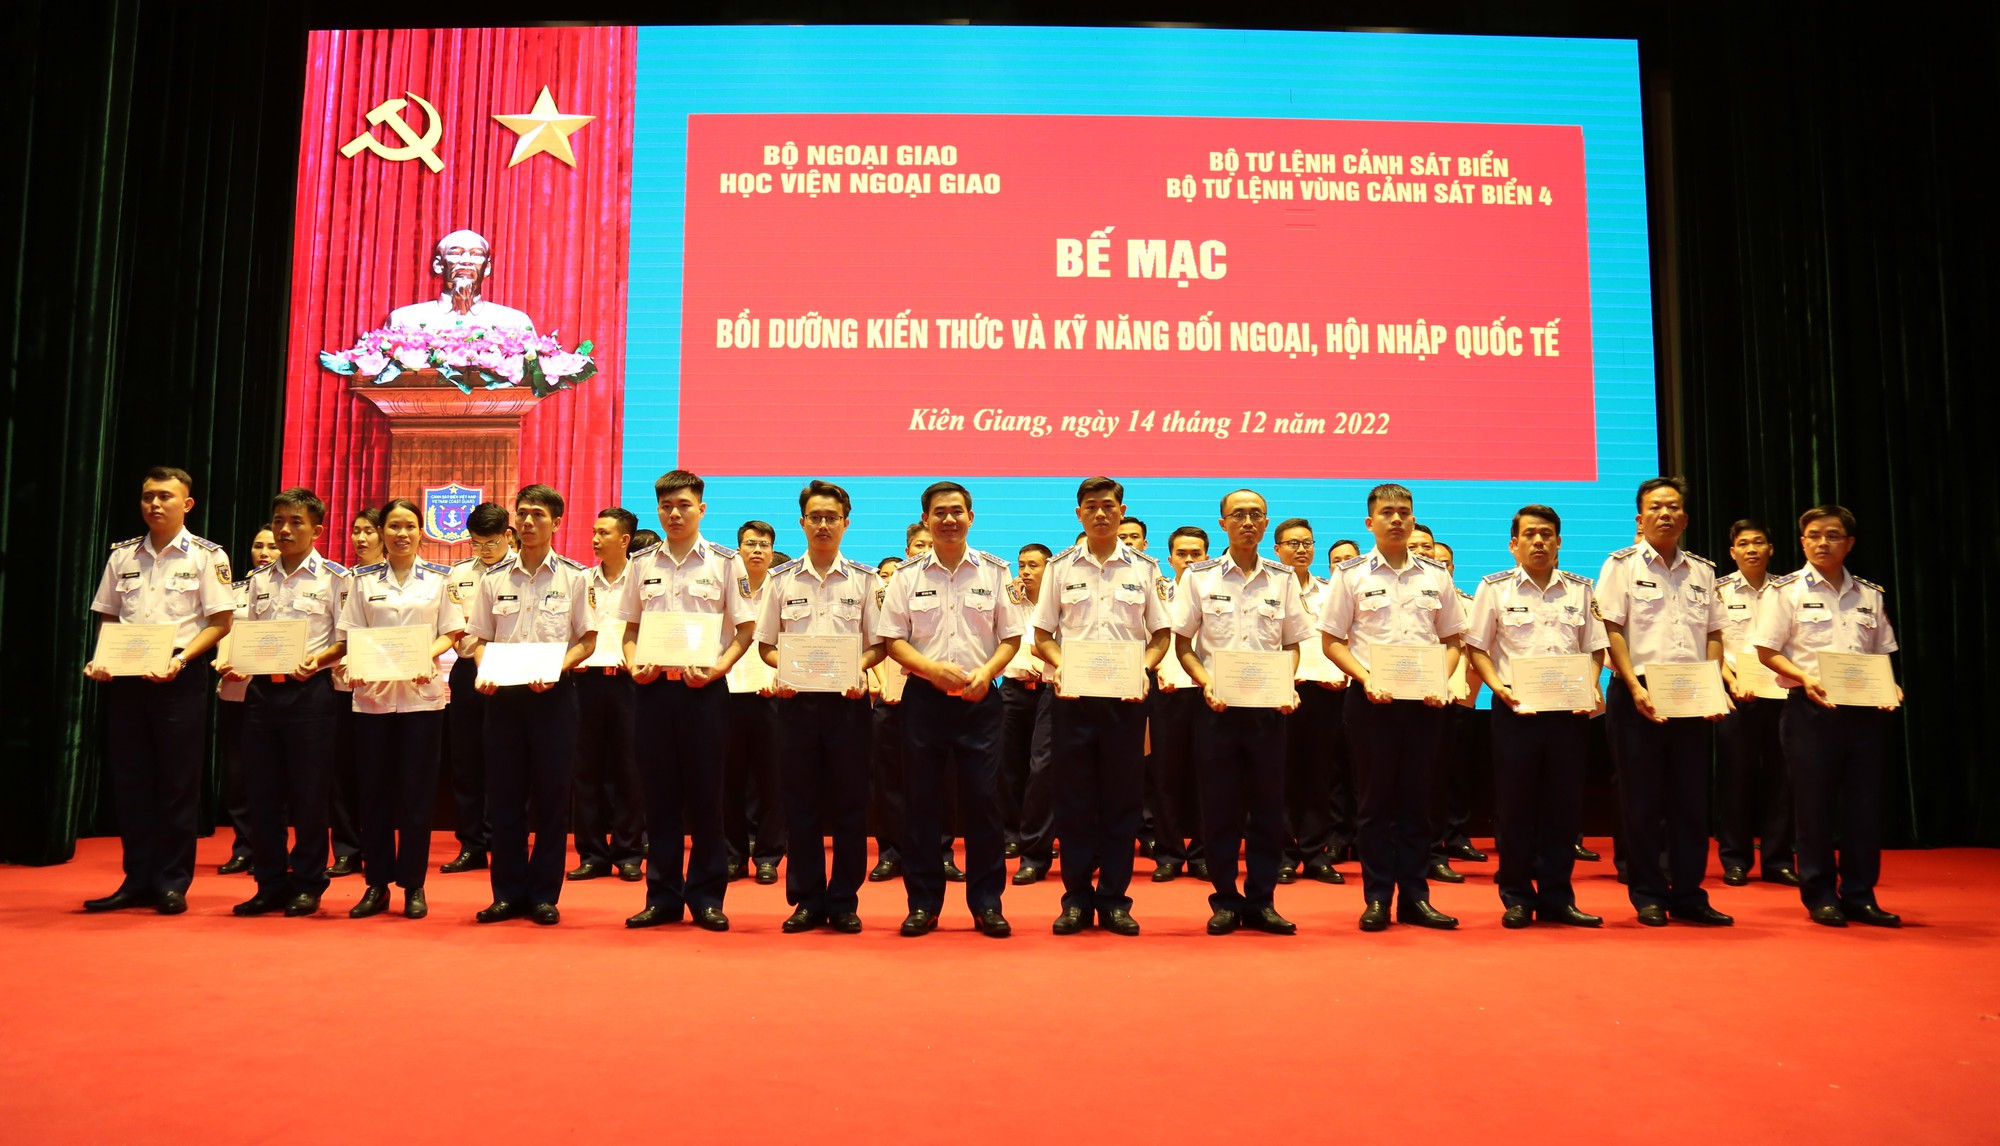 Tăng cường kỹ năng đối ngoại, hội nhập quốc tế trong lực lượng Cảnh sát biển - Ảnh 4.